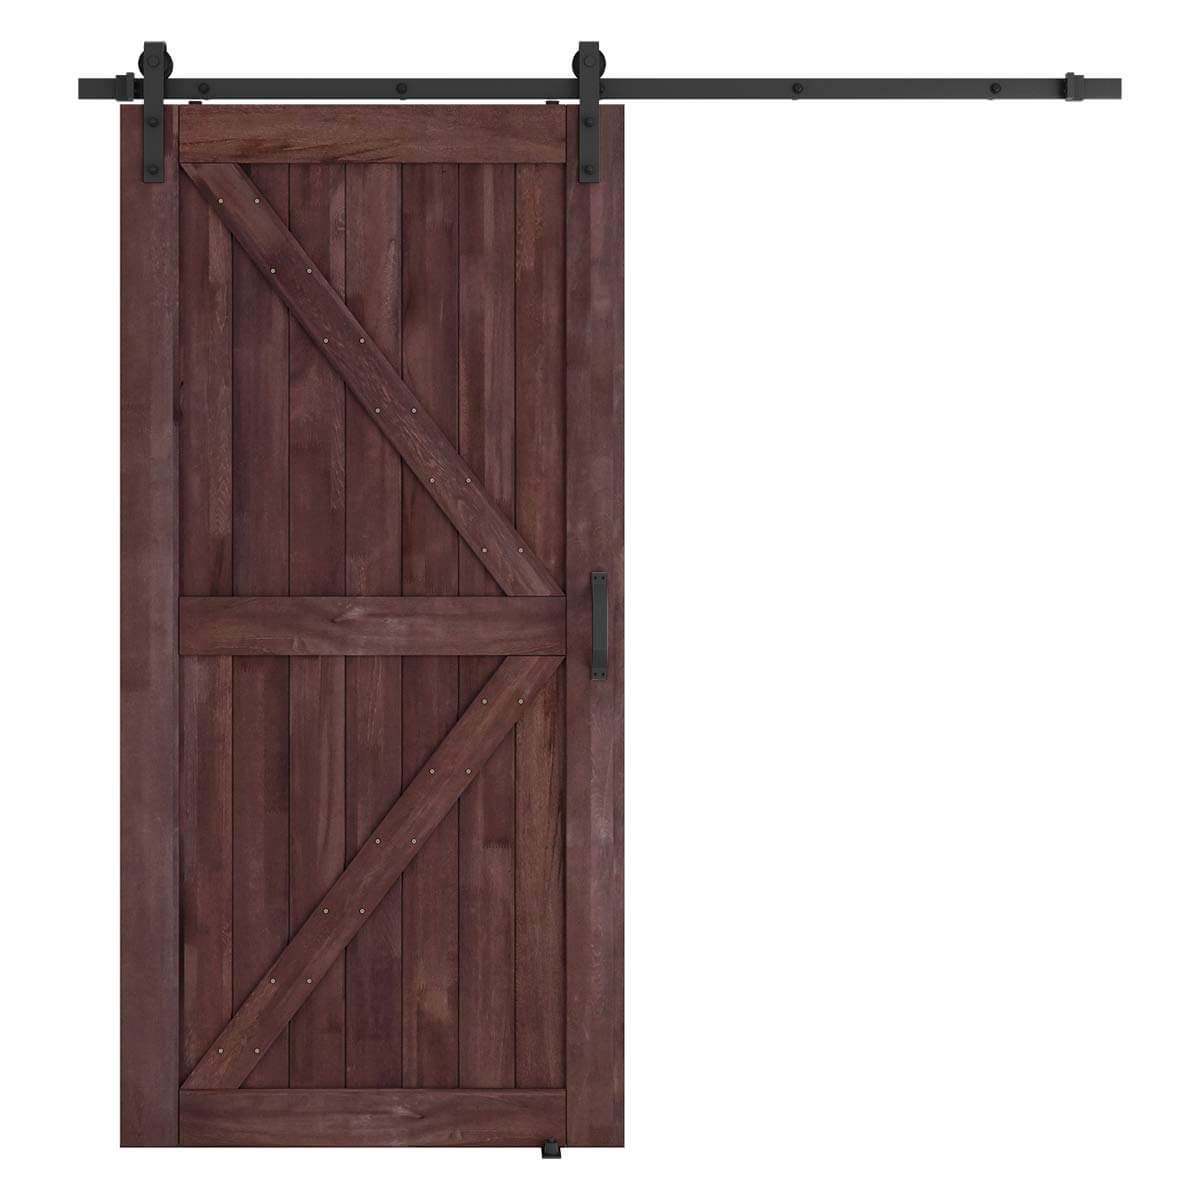 42" x 84" Sliding Barn Door with 8'0" Barn Door Hardware Kit &amp; Handle, Pre-Drilled | Amazon